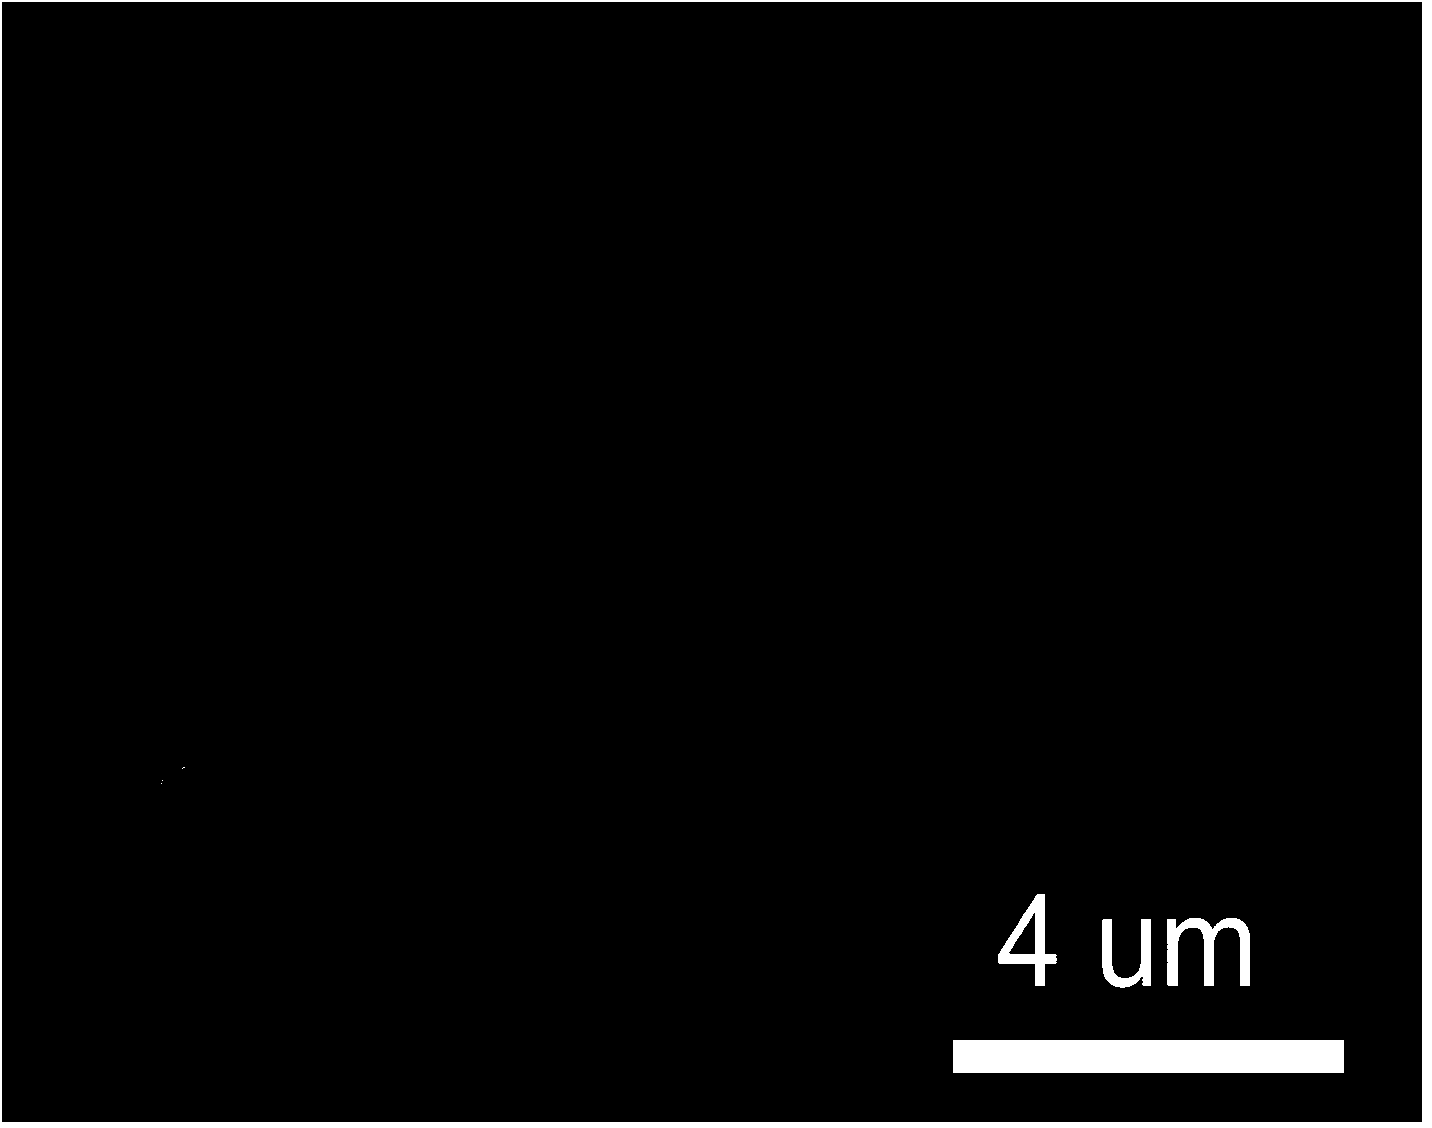 Preparation method for an Ag/AgBr/GO nano-composite photocatalyst